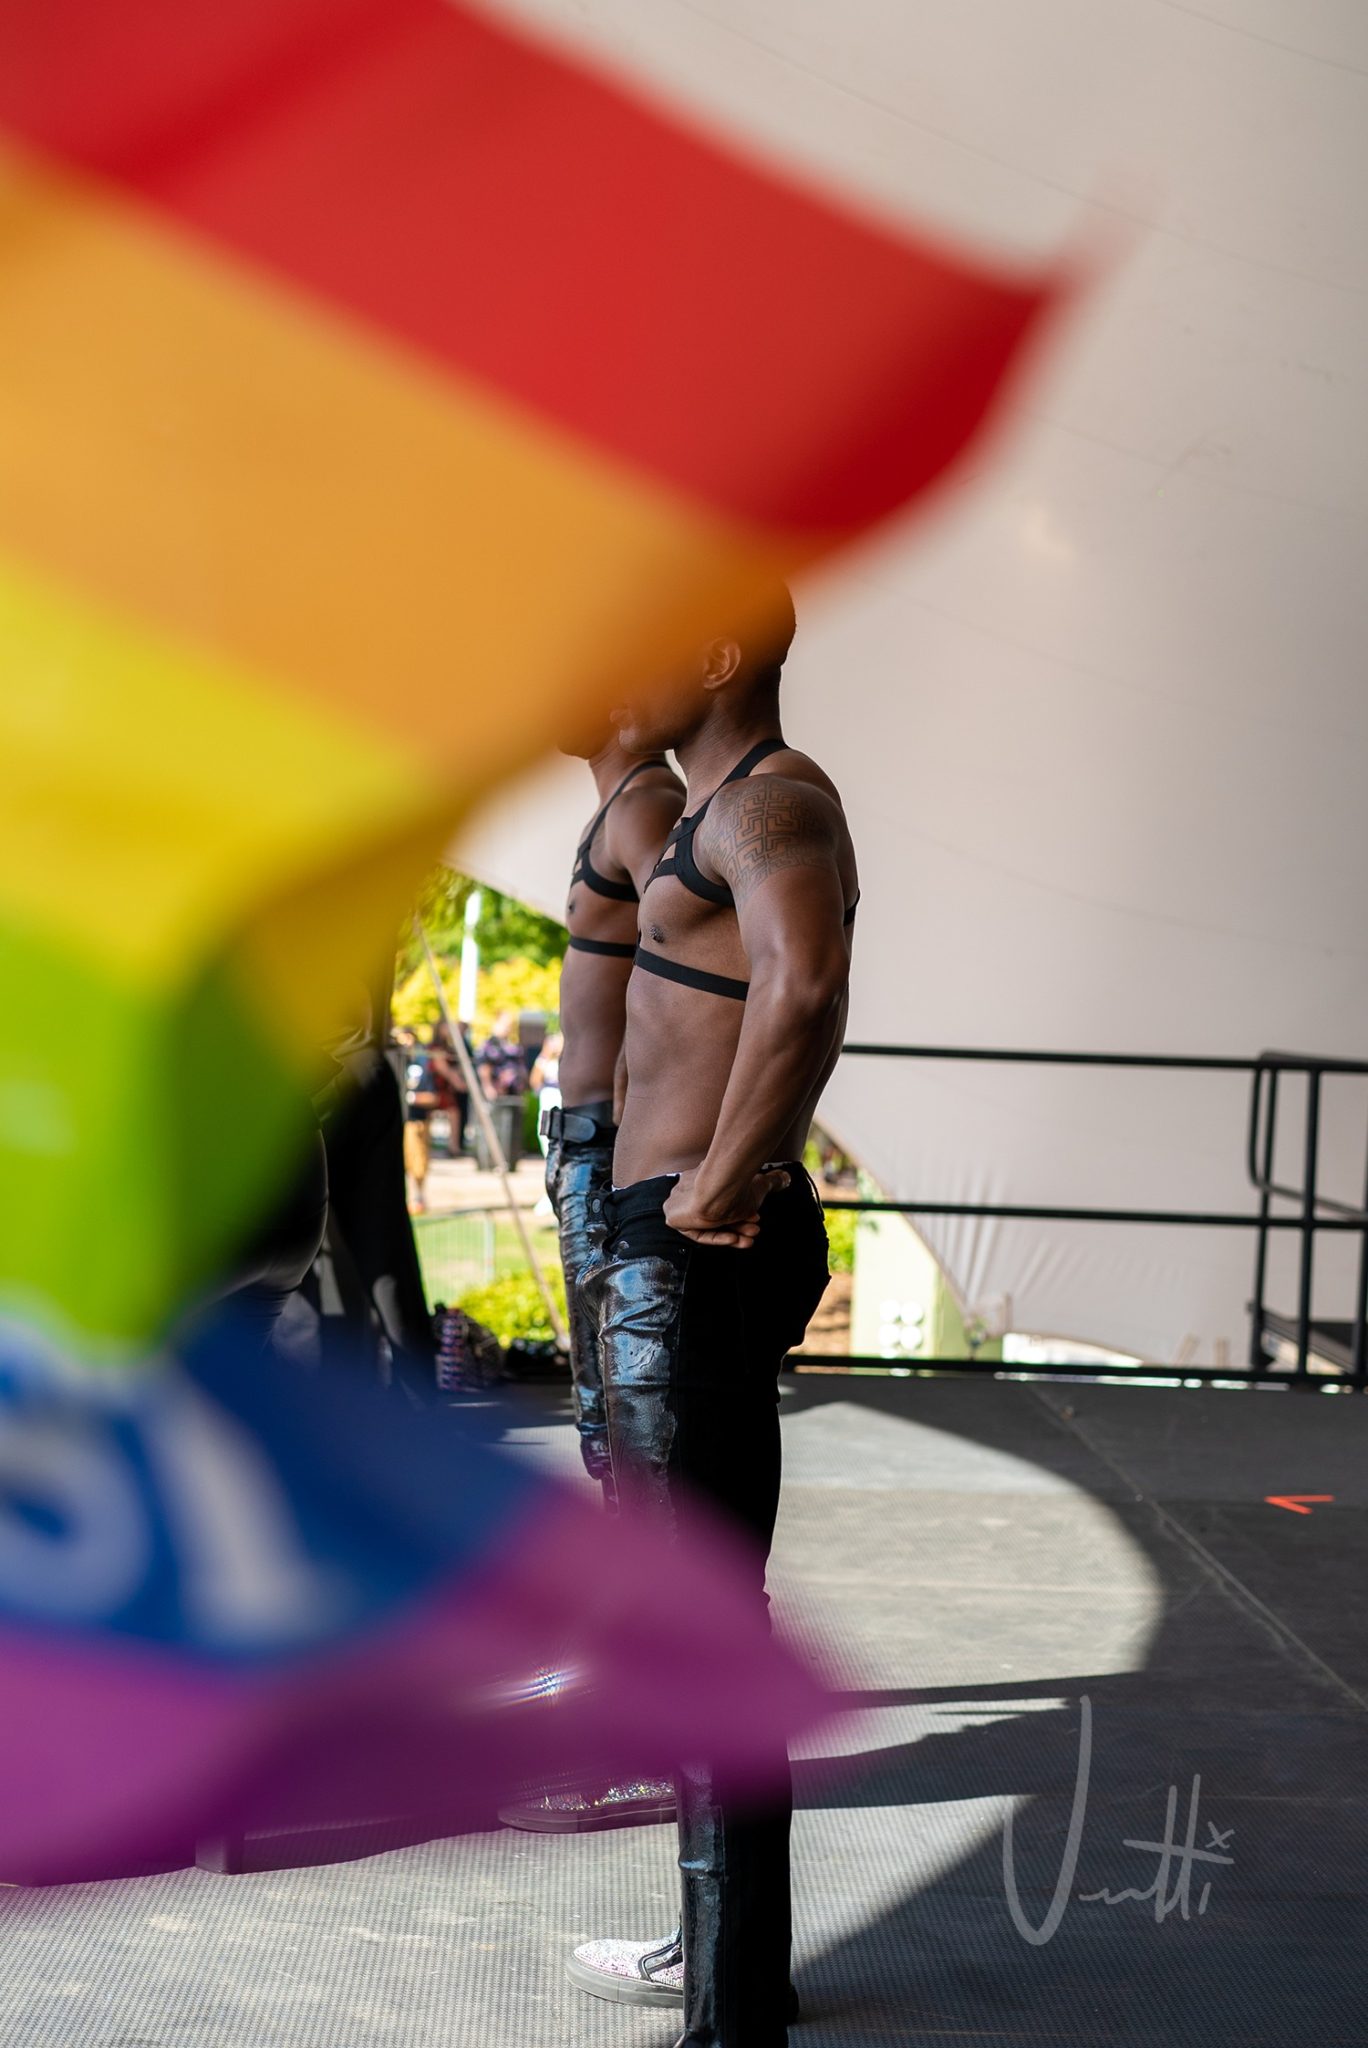 Pridefest 2019